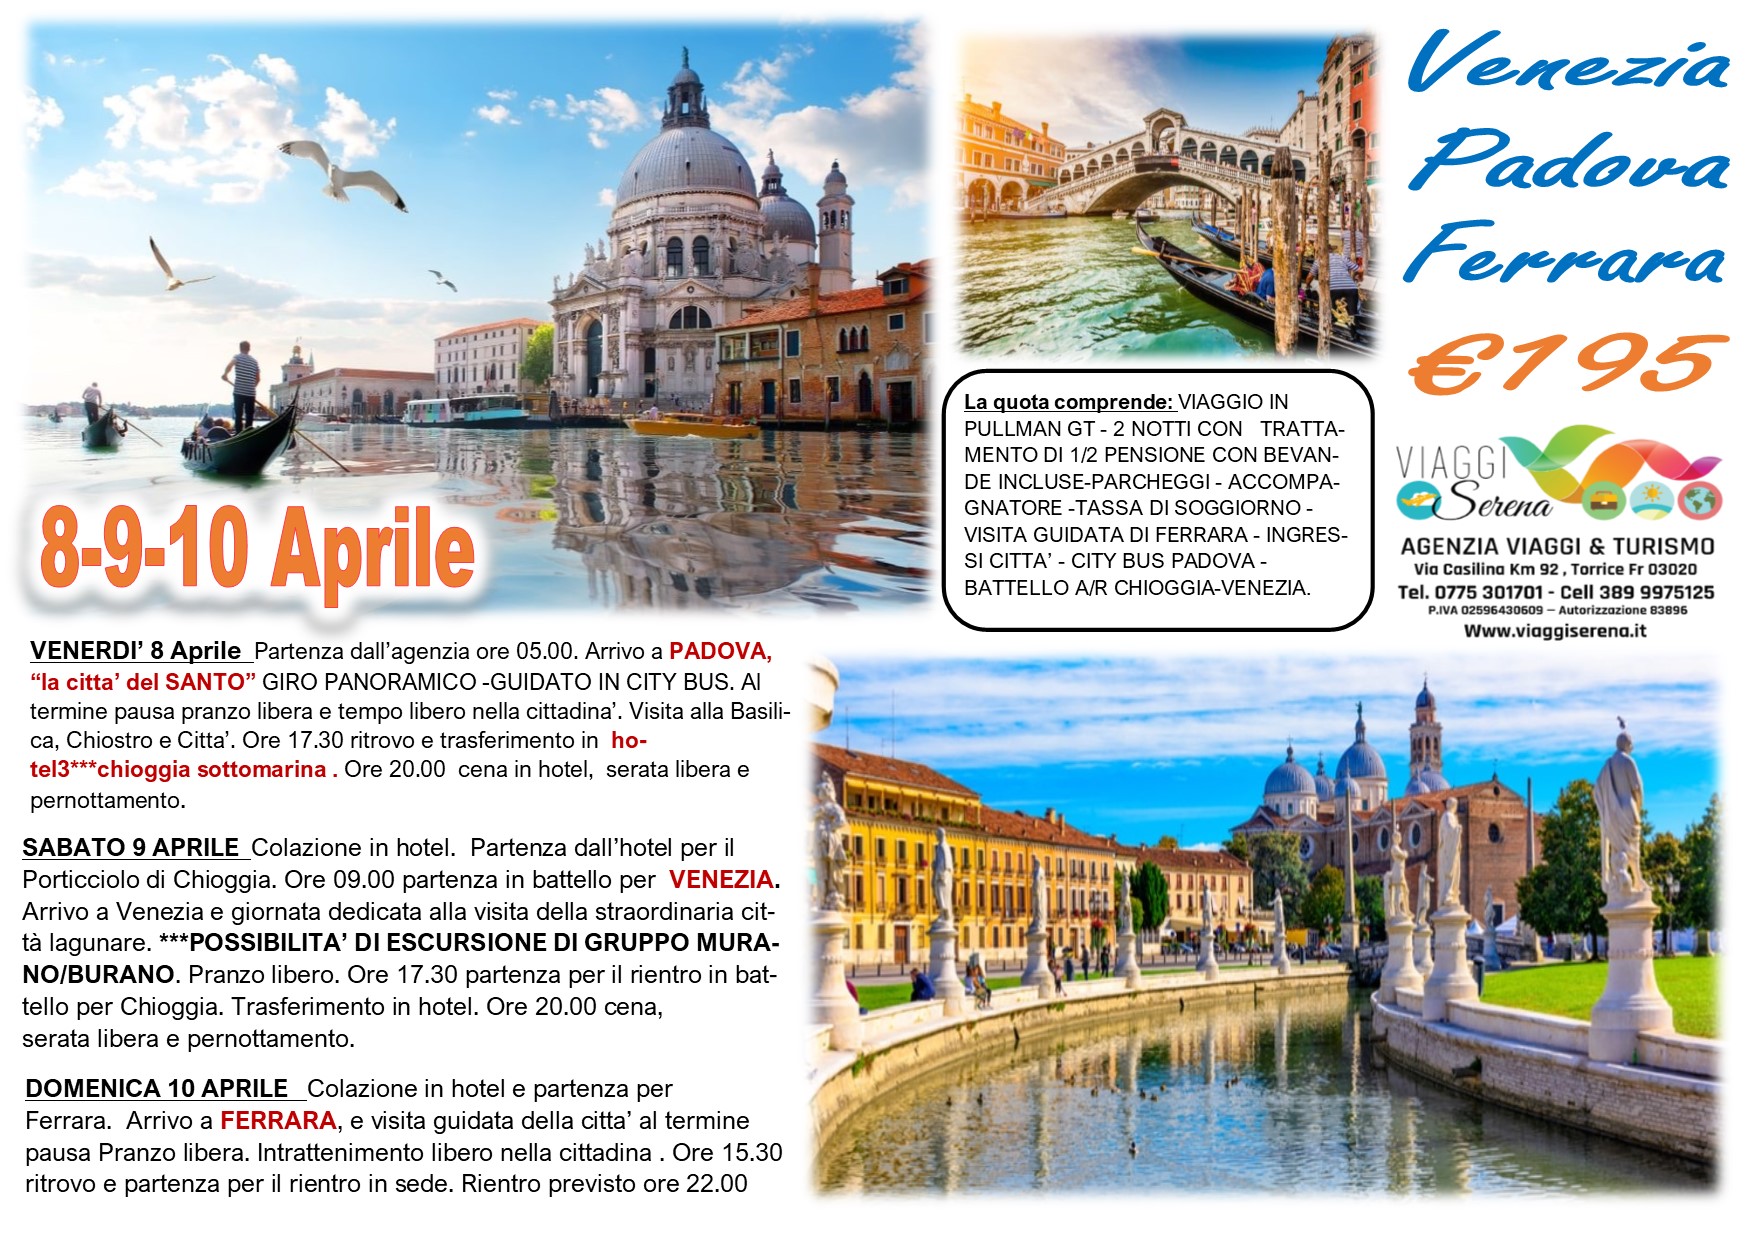 Viaggi di Gruppo: Venezia, Padova & Ferrara 8-9-10 Aprile € 195,00